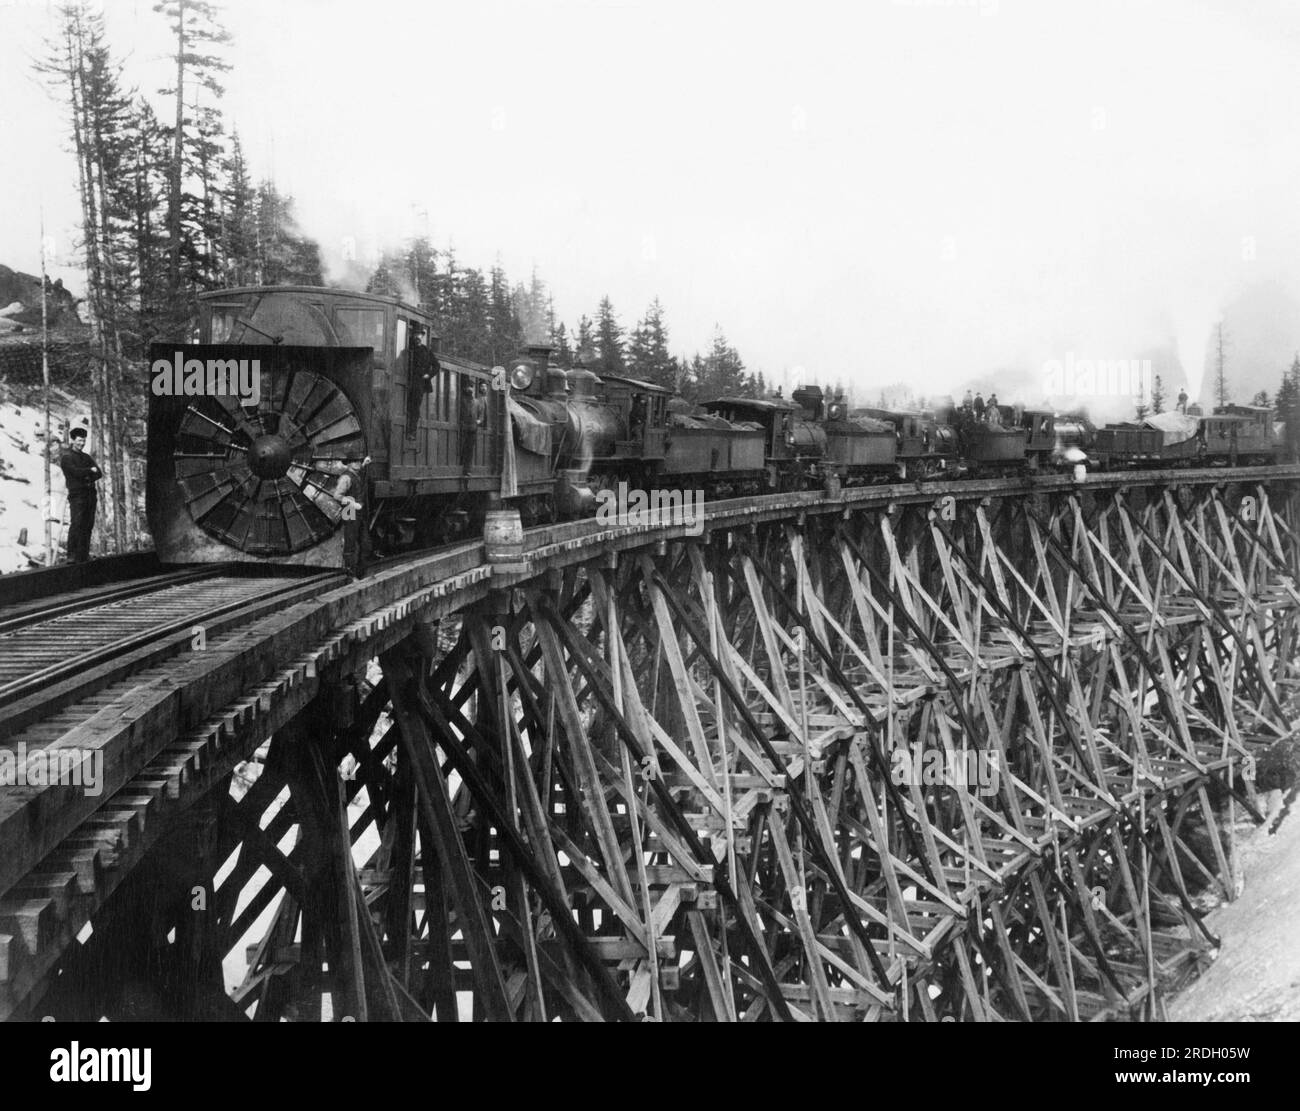 Easton, Washington: Der Schneepflug der Northern Pacific Railroad von 1887 auf der Brücke Nr. 1 über dem Mosquito Creek in den Cascades Mountains. Achten Sie auf die Pfluge an beiden Enden des Zuges. Stockfoto